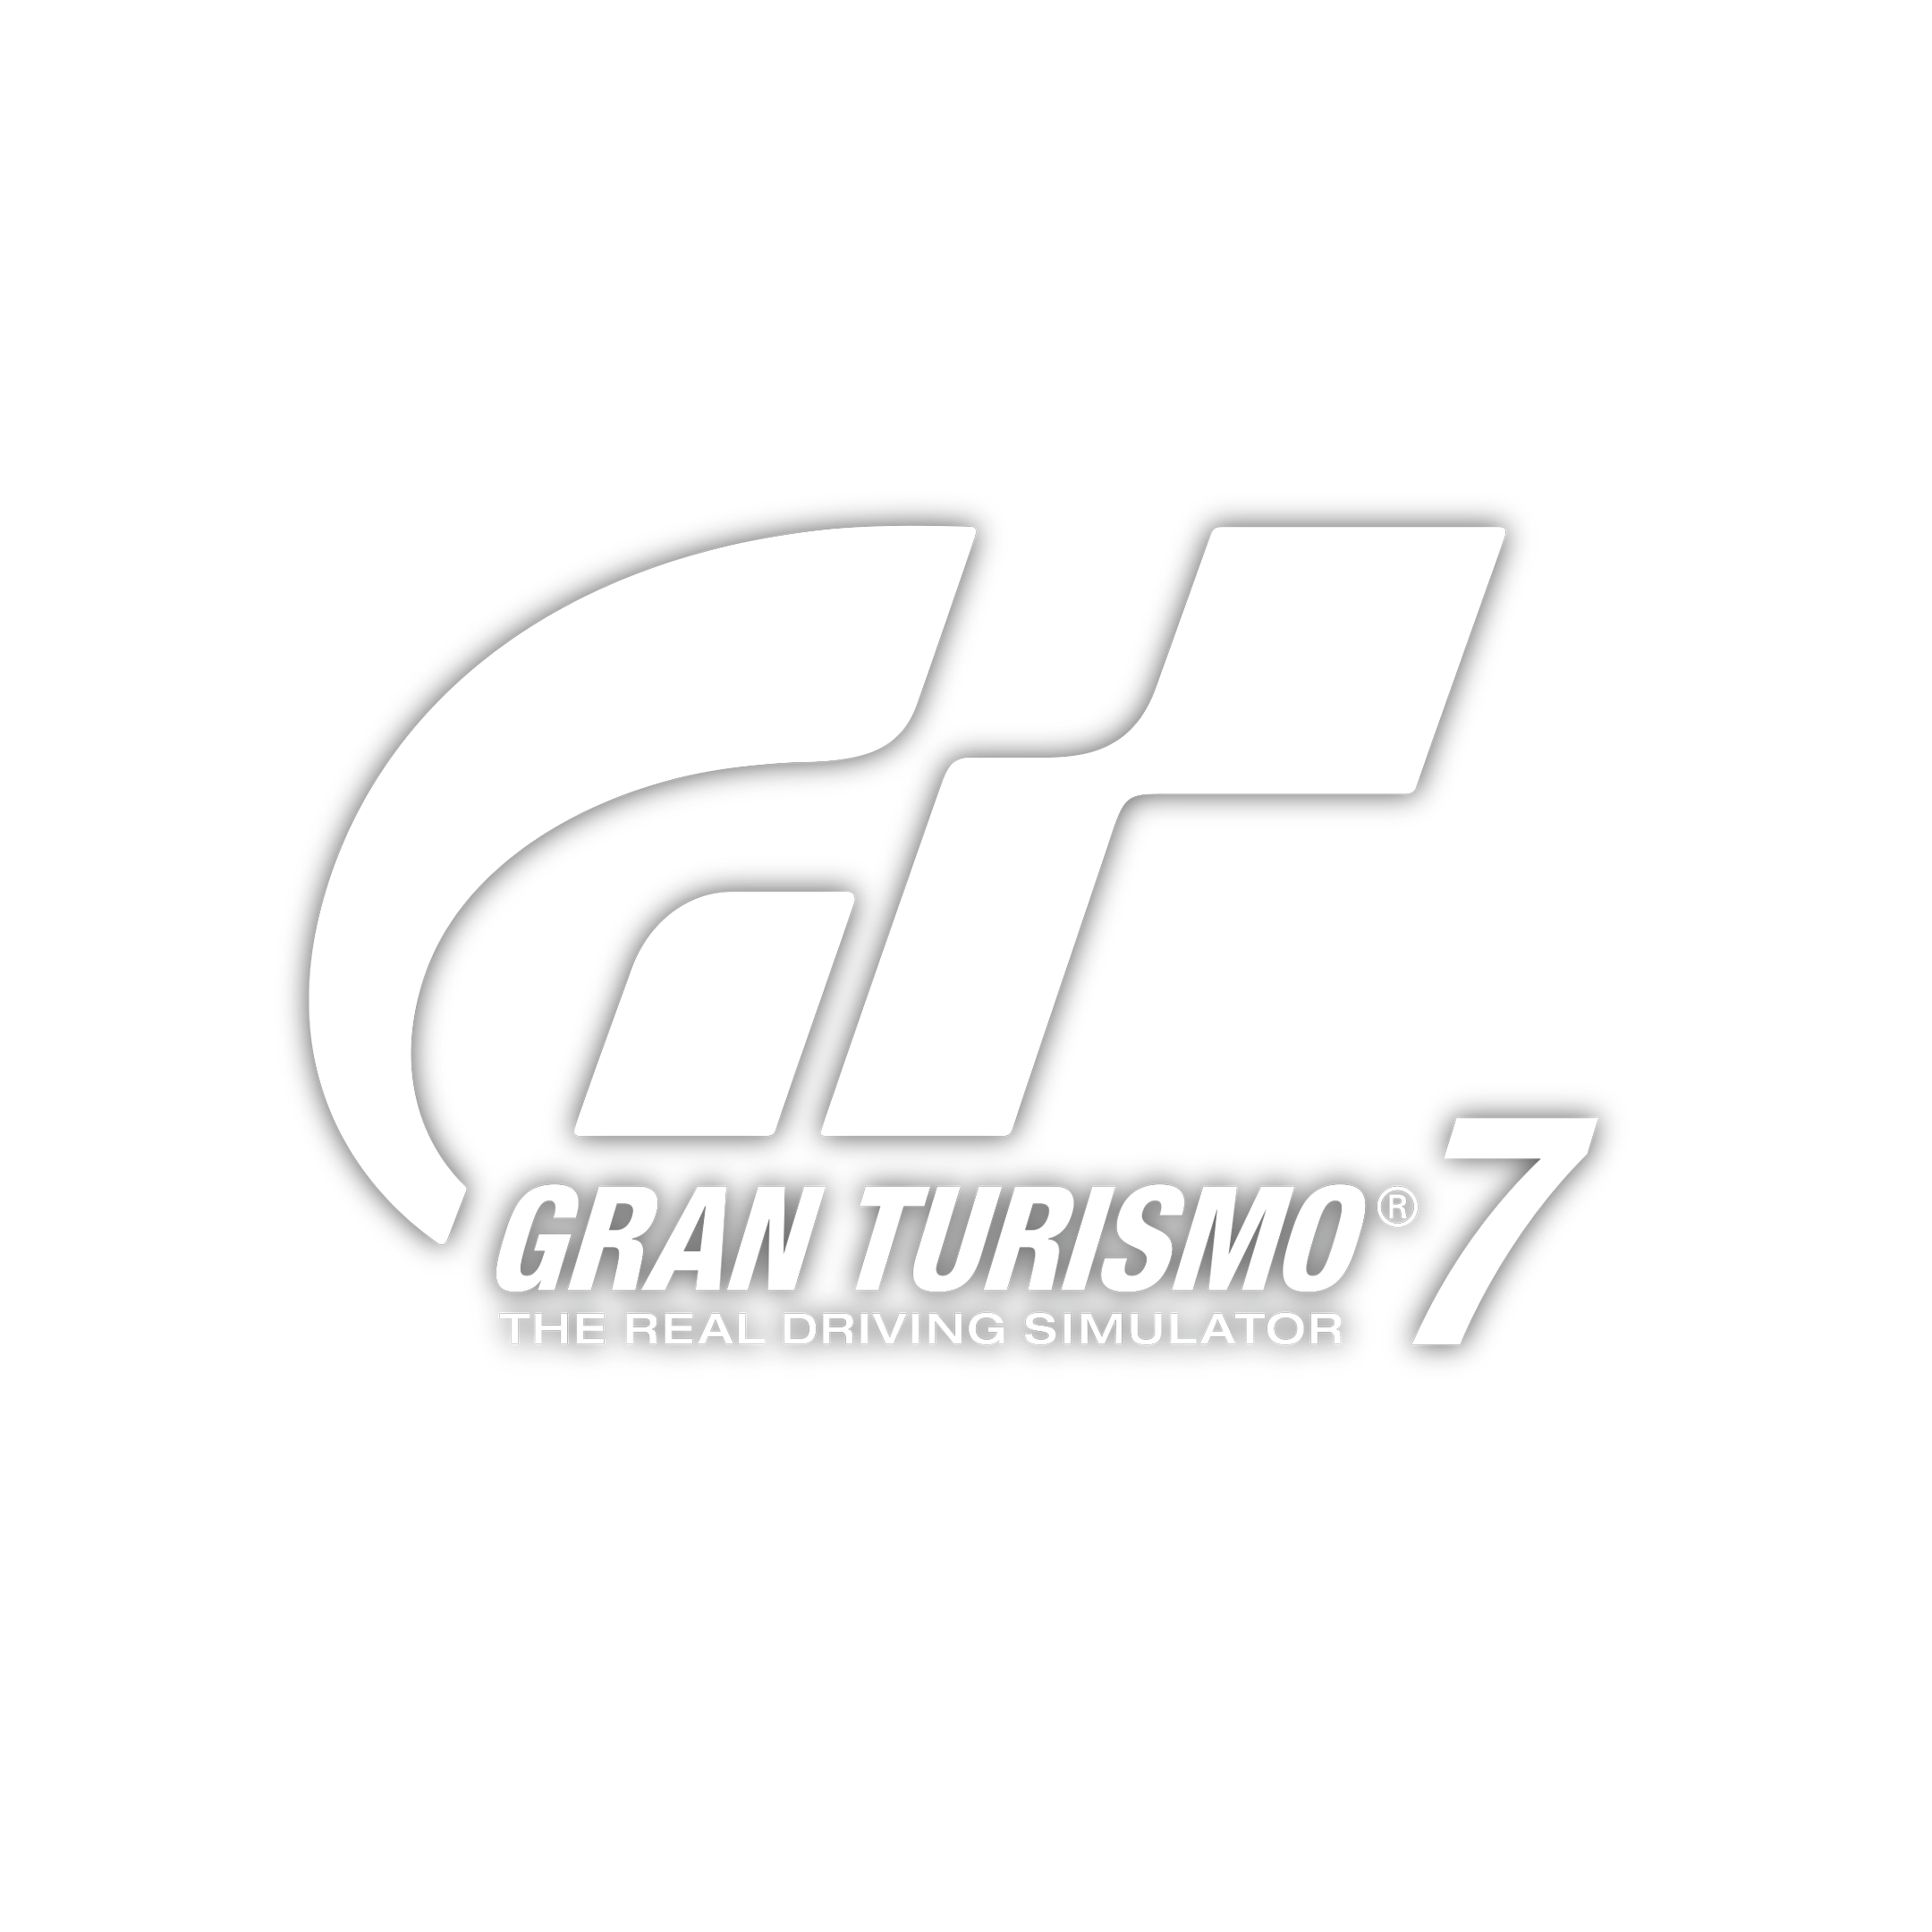 Gran Turismo 7 nur noch heute im Bundle mit 12 Monaten PS Plus holen